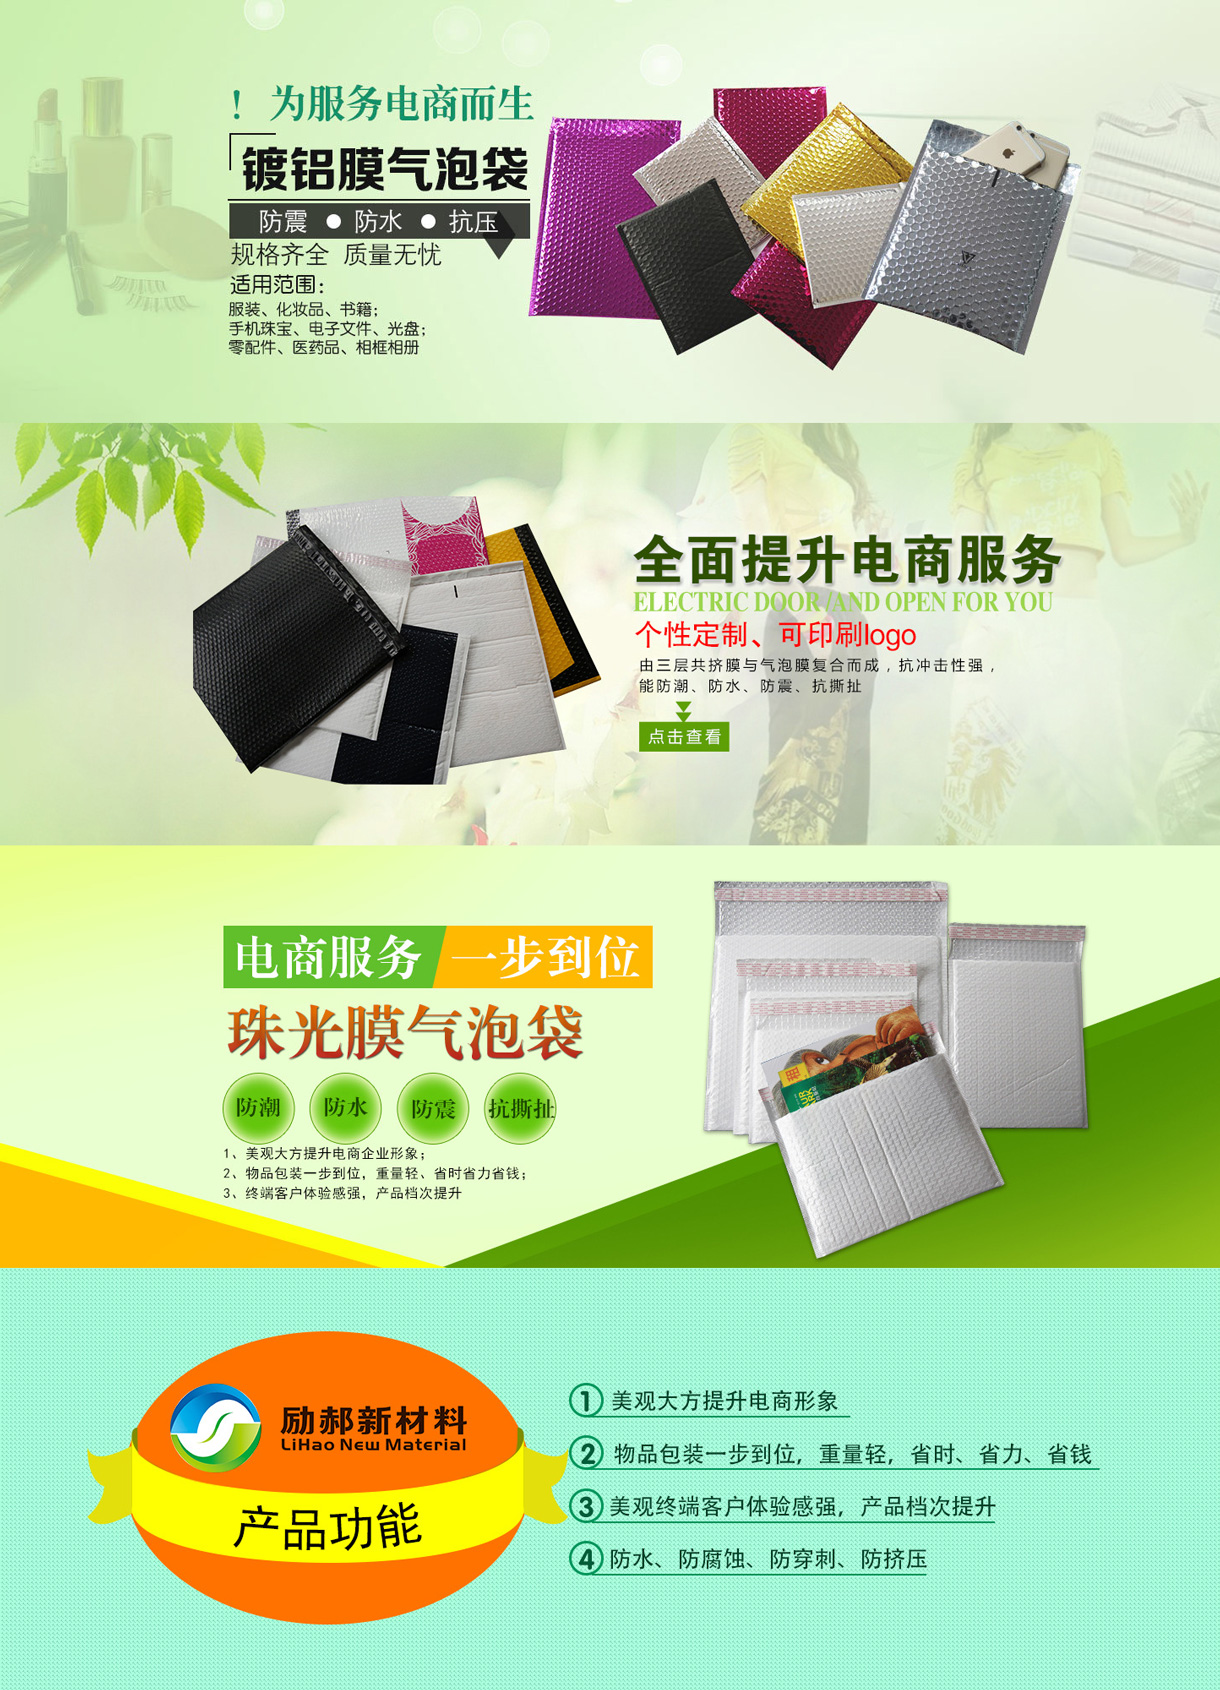 杭州励郝新材料有限公司-中国国际包装展-中国包装容器展